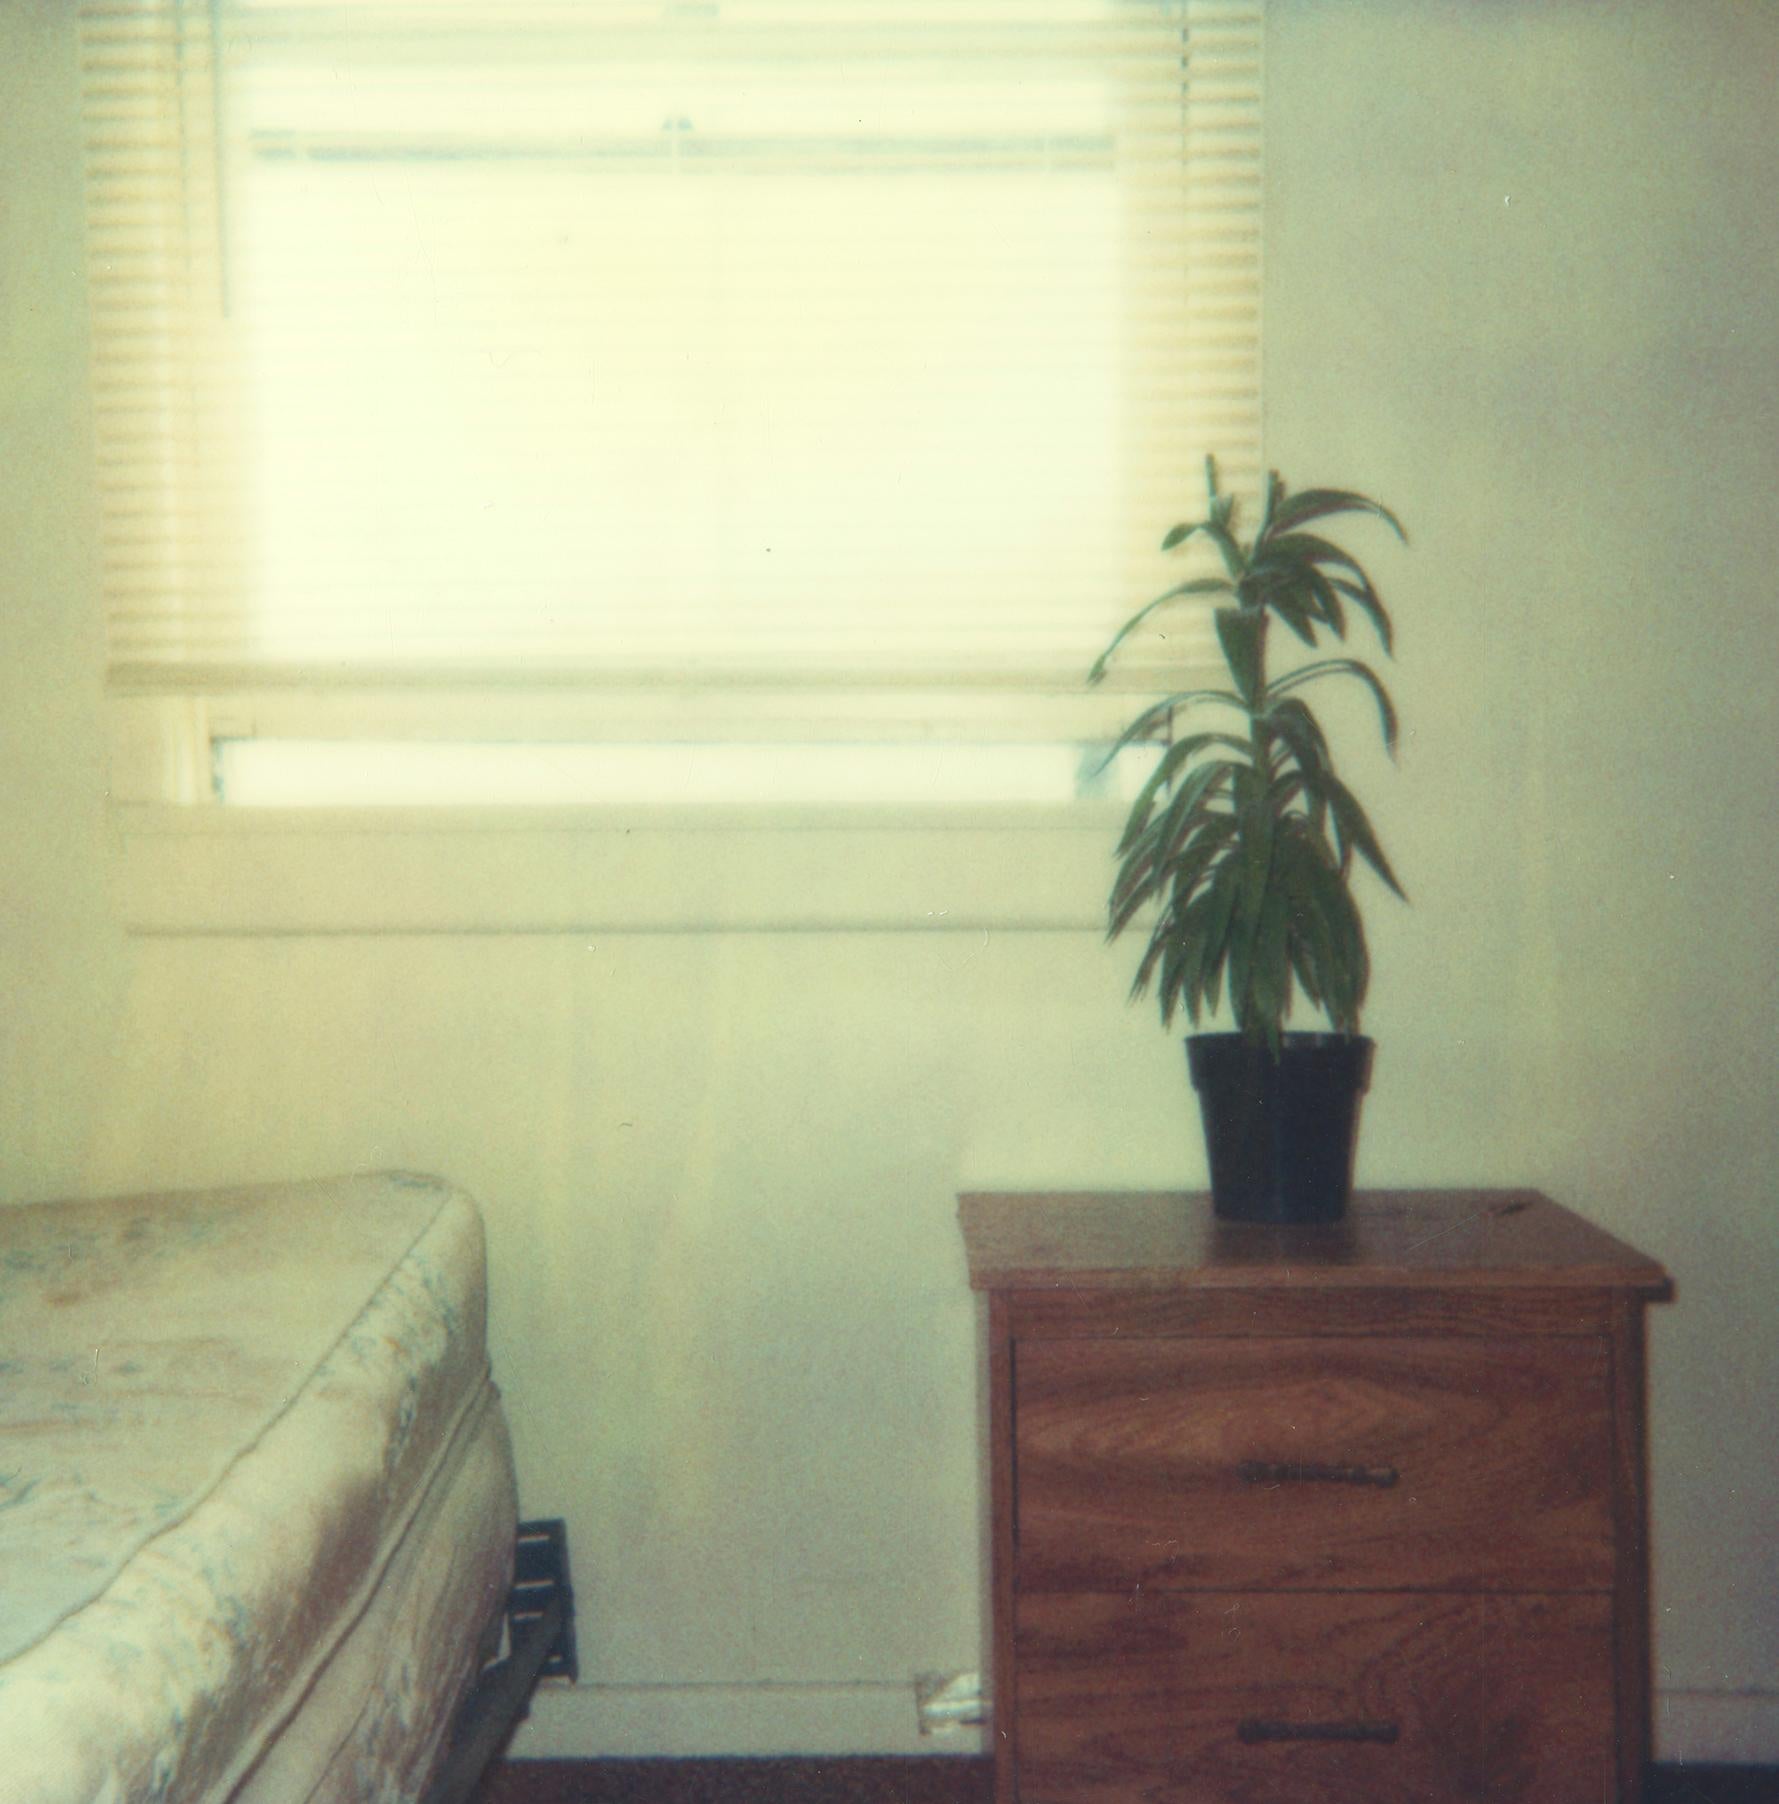 Bedroom Plant (29 Palms, CA) - 1999

58x56cm, 
Edition de 10, plus 2 épreuves d'artiste. 
C-print analogique, imprimé à la main par l'artiste, basé sur le Polaroid. 
Label de signature et certificat.  
Numéro d'inventaire de l'artiste : 602. 
Non